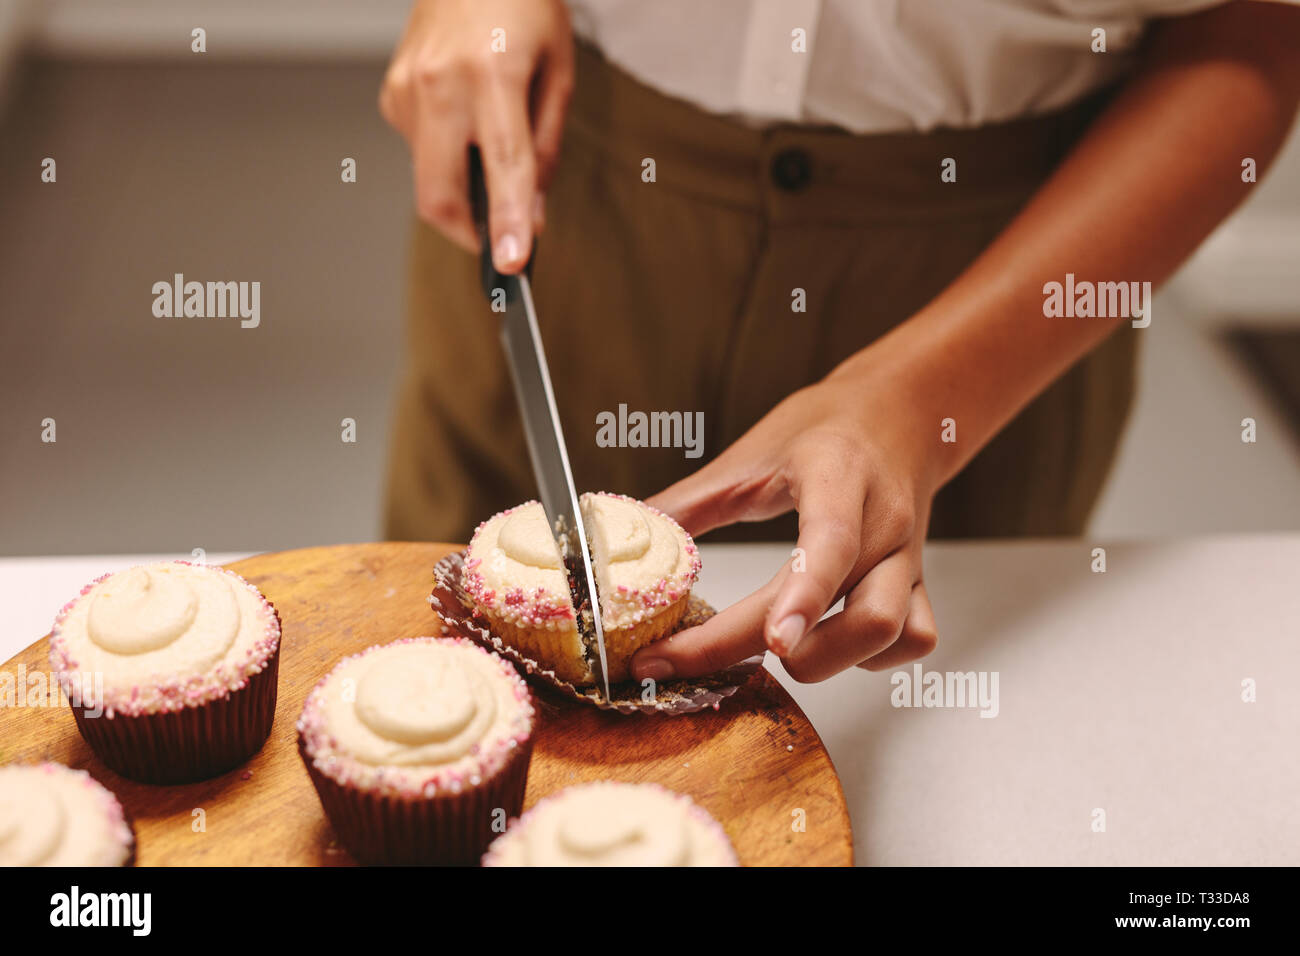 Close up de la coupe d'un chef pâtissier cupcake fait maison sur planche de bois avec un couteau. Femme pâtissier préparation de muffins dans la cuisine. Banque D'Images